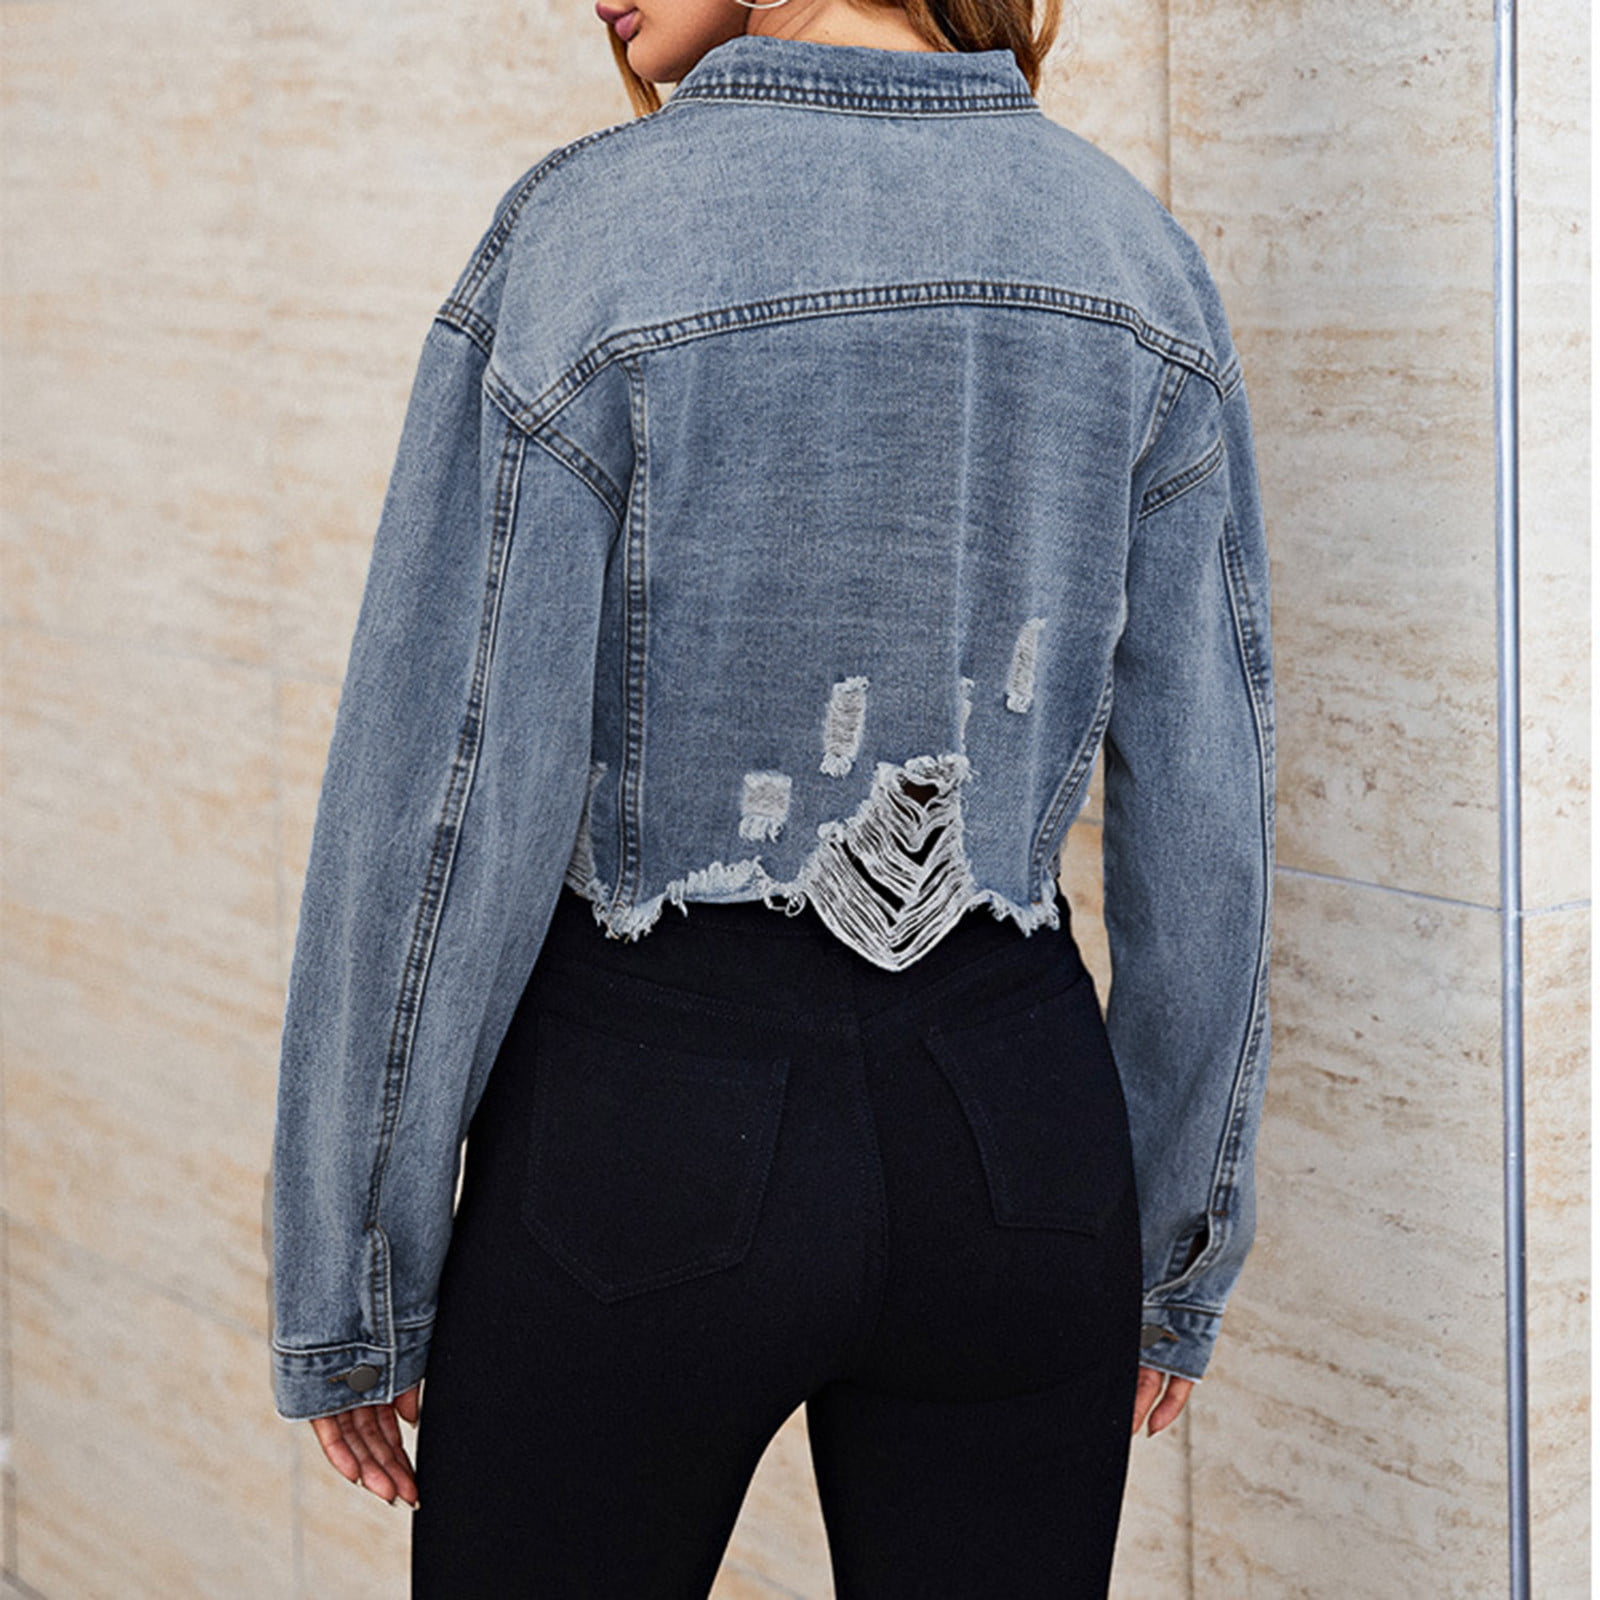 Elegant Denim Jackets for Women Online at a la mode